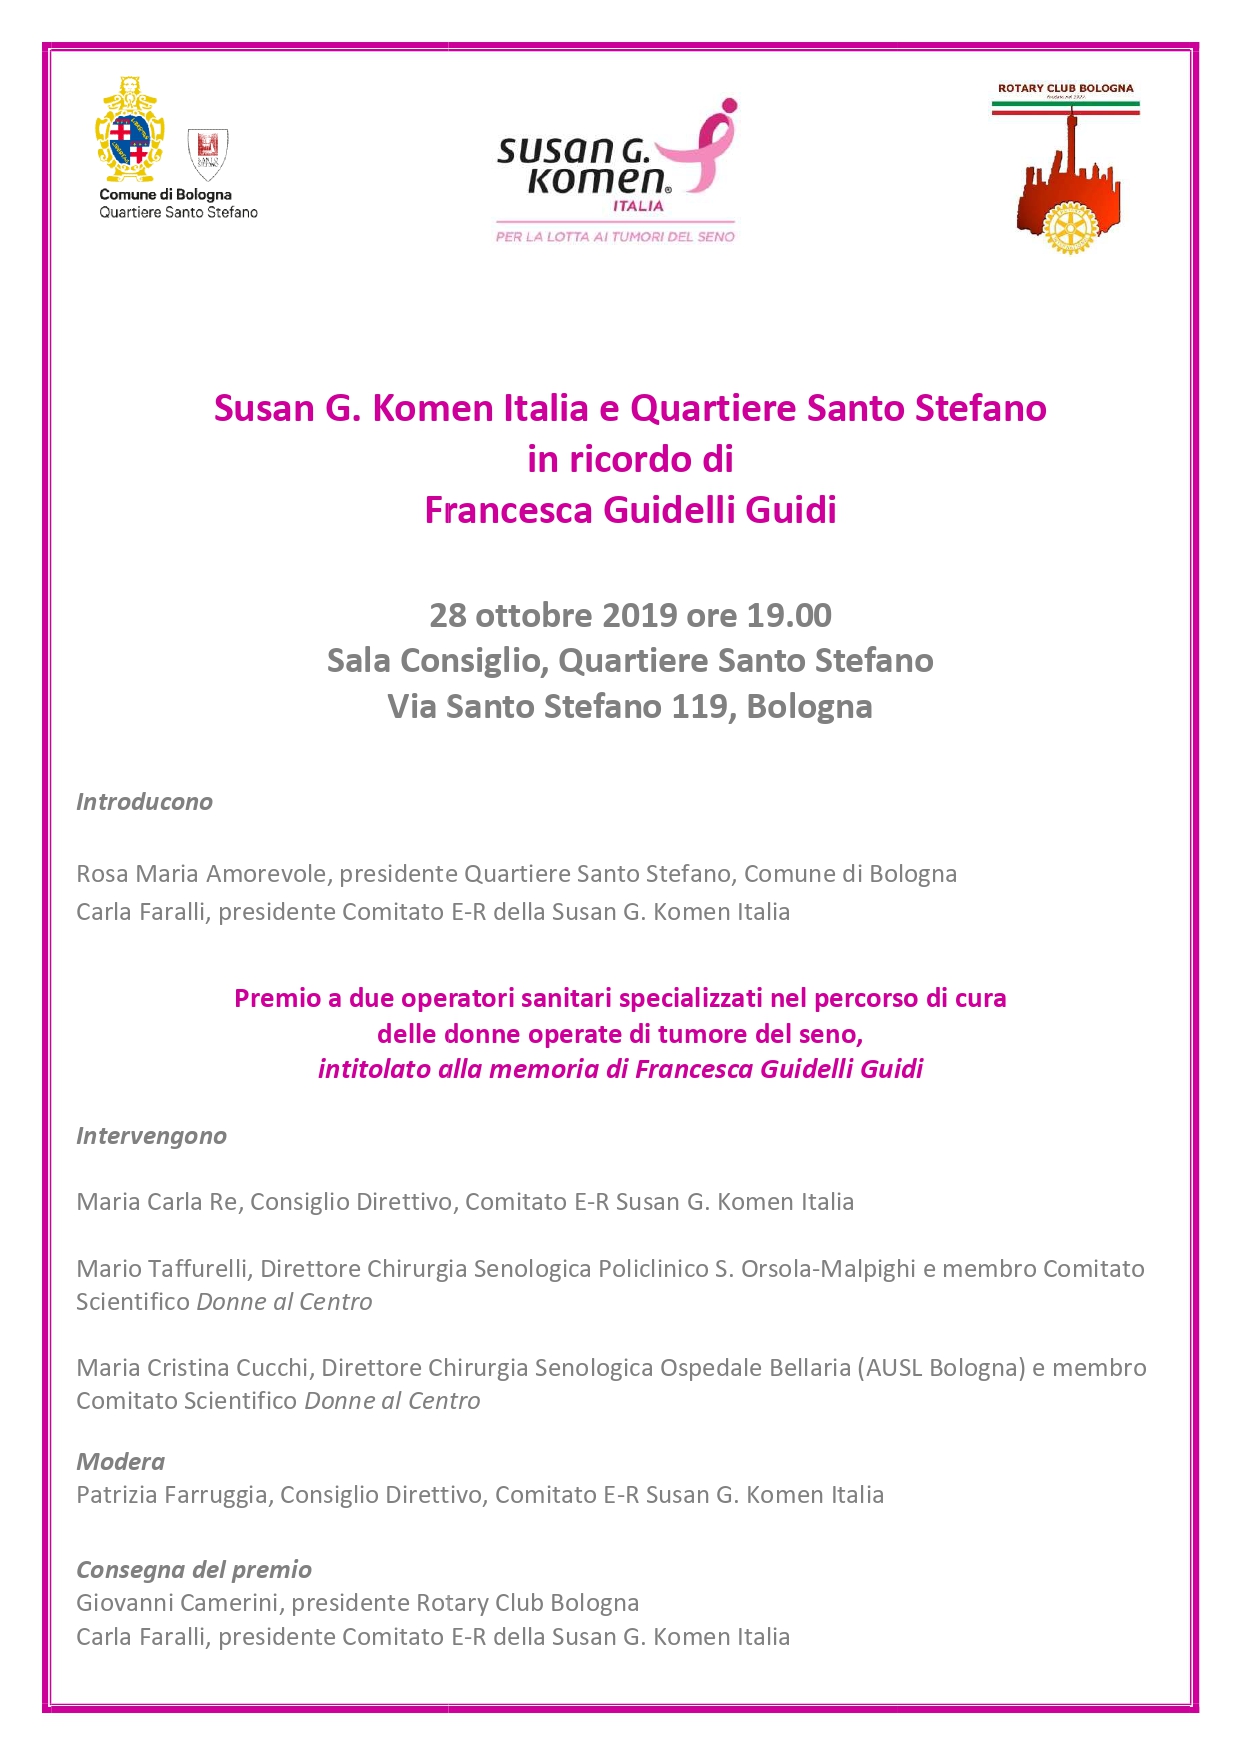 Susan G. Komen Italia e Quartiere Santo Stefano in ricordo di Francesca Guidelli Guidi